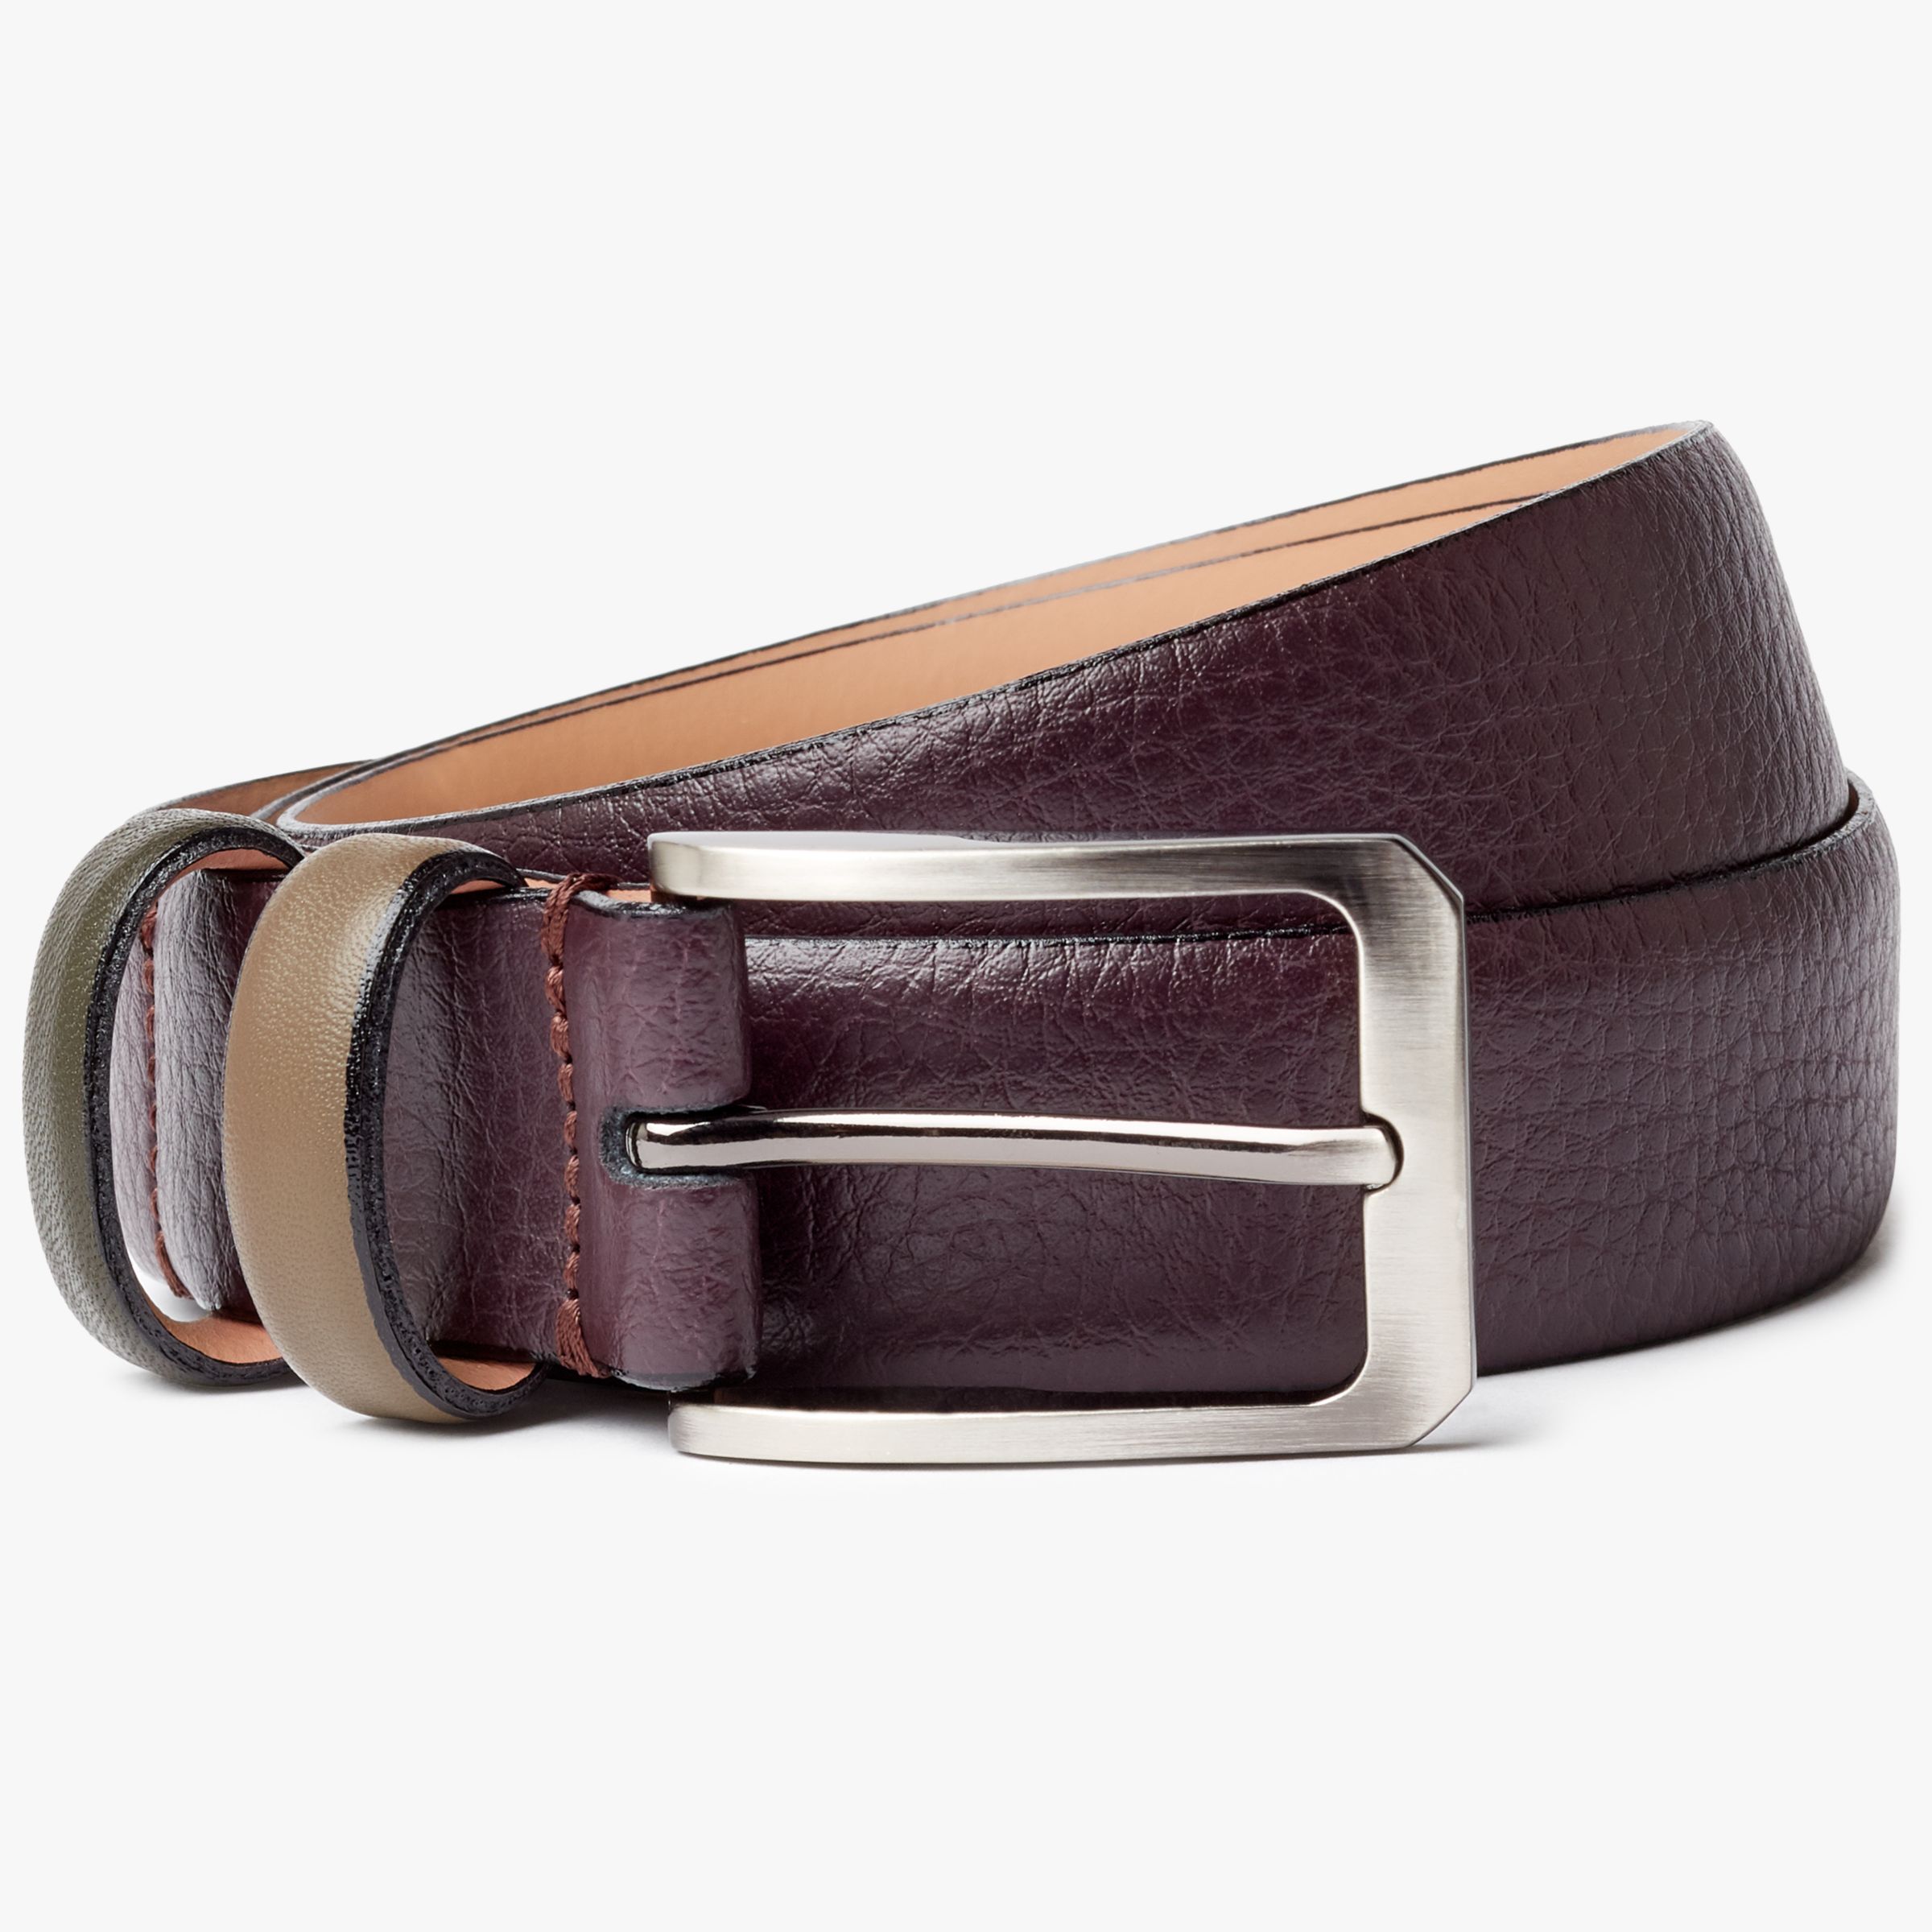 Men's Belts | Leather & Designer Belts | John Lewis